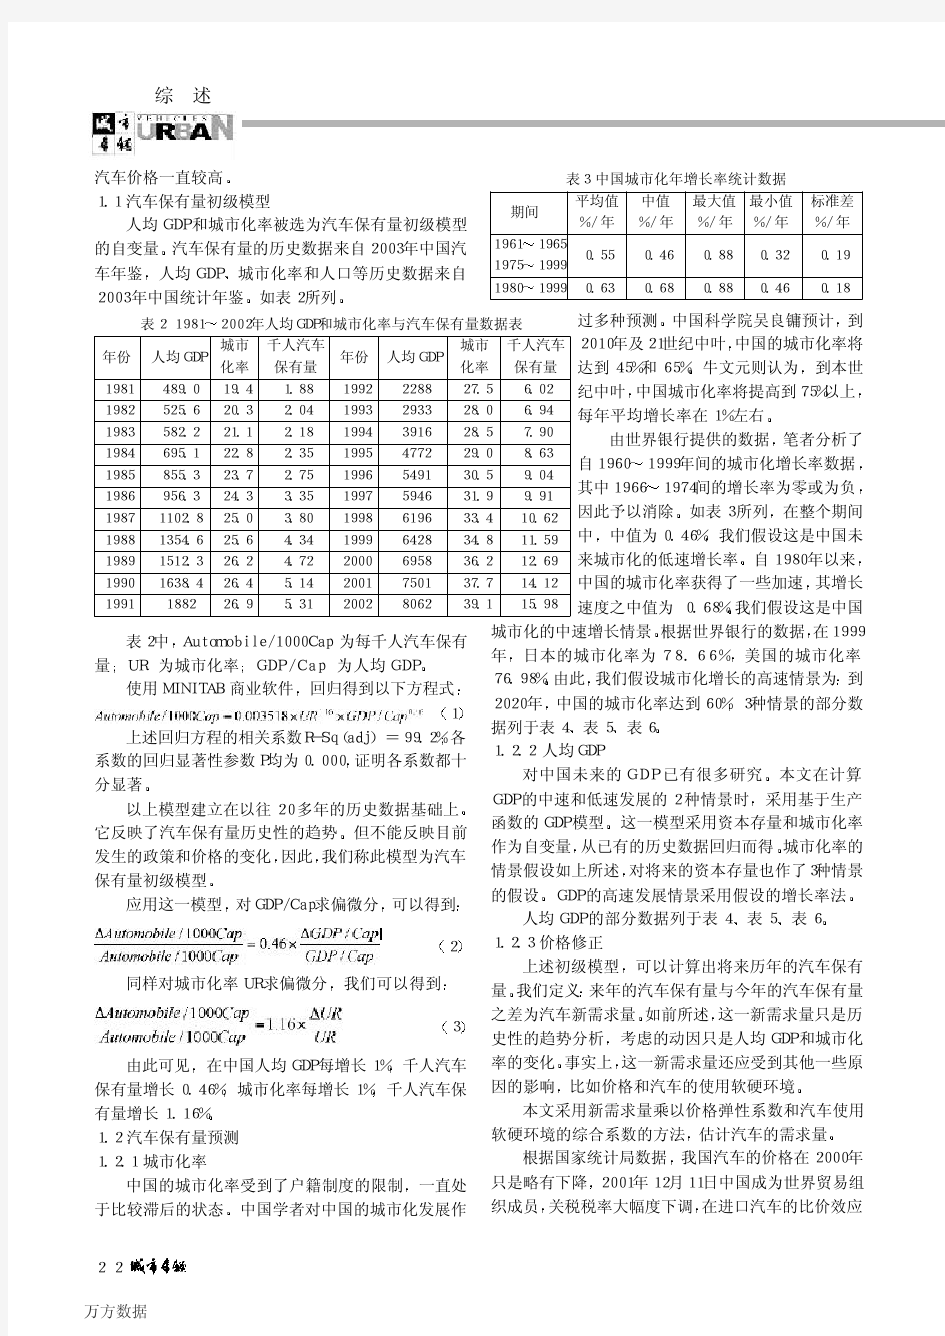 中国汽车保有量及年产量预测模型研究